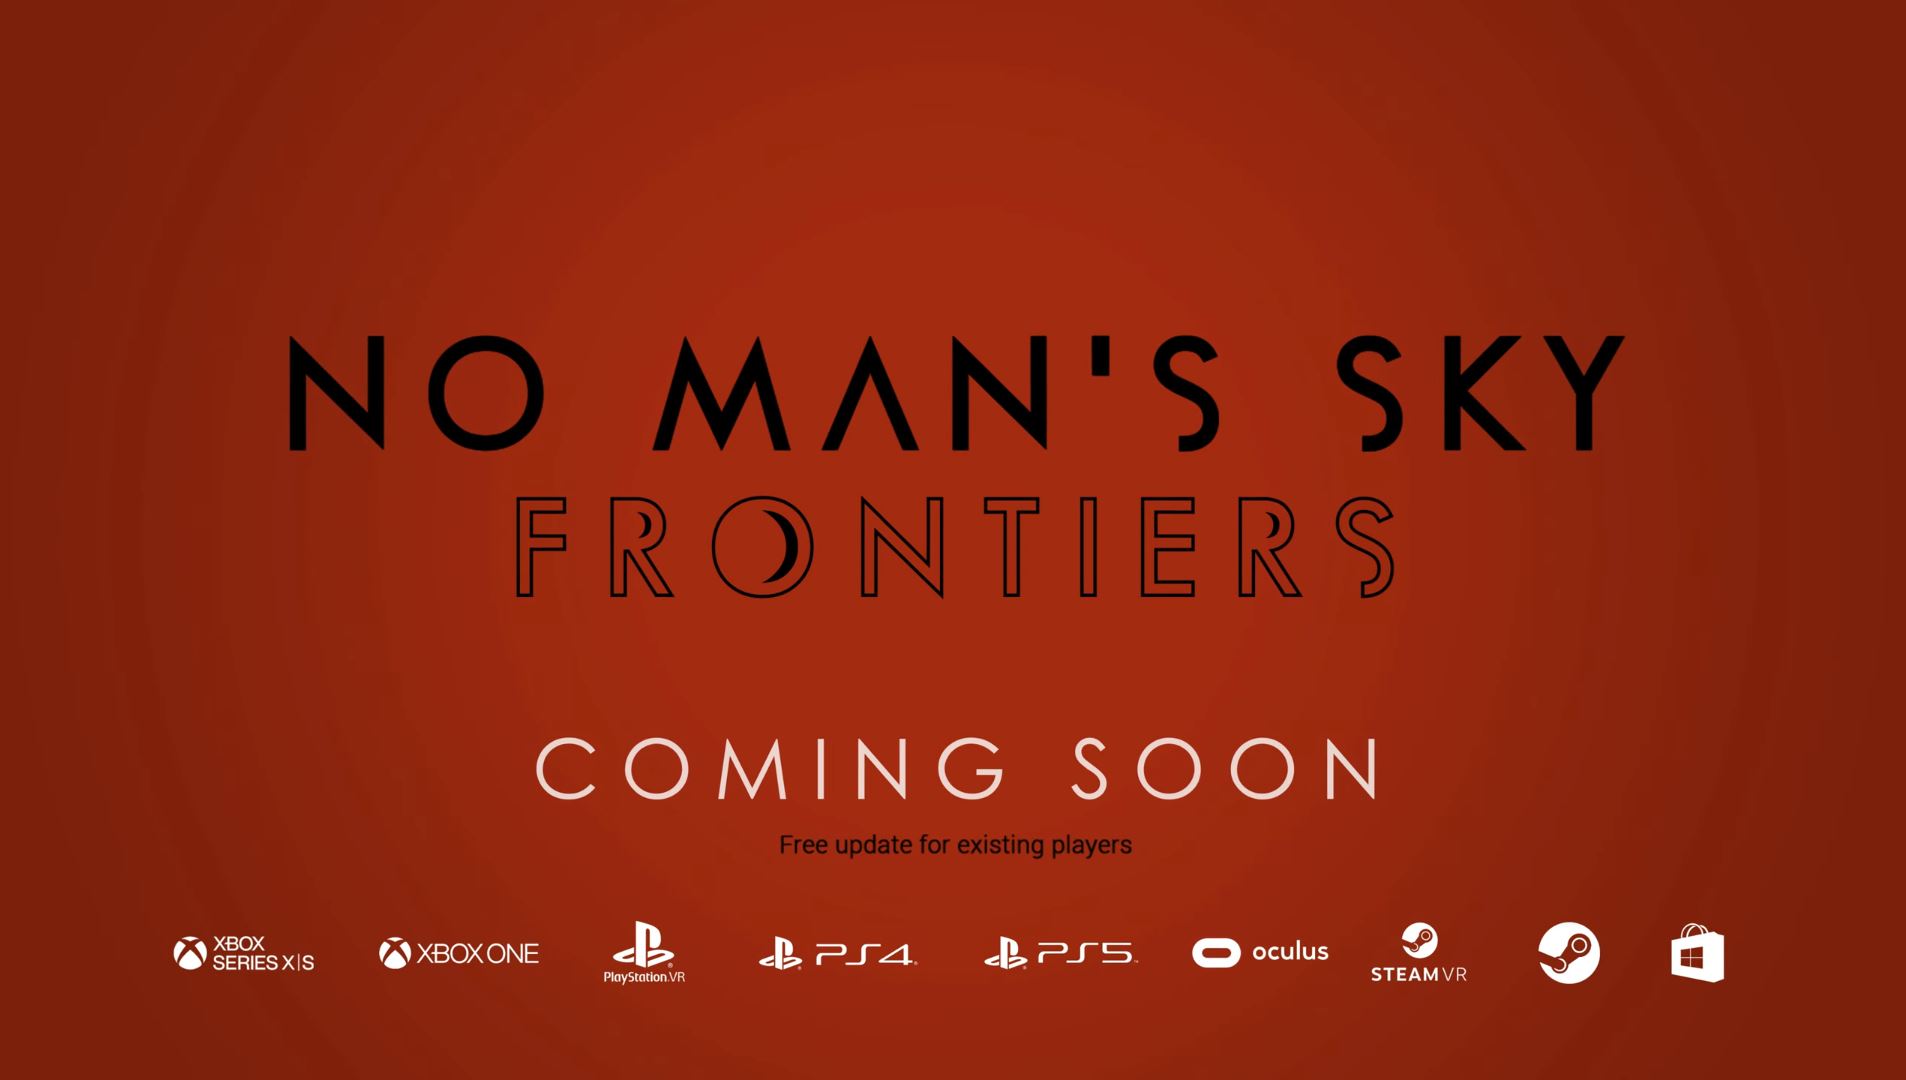 No Man's Sky เตรียมอัปเดตฟรีครั้งใหญ่ฉลองครบรอบ 5 ปี ในชื่อ "Frontiers" เร็วๆ นี้